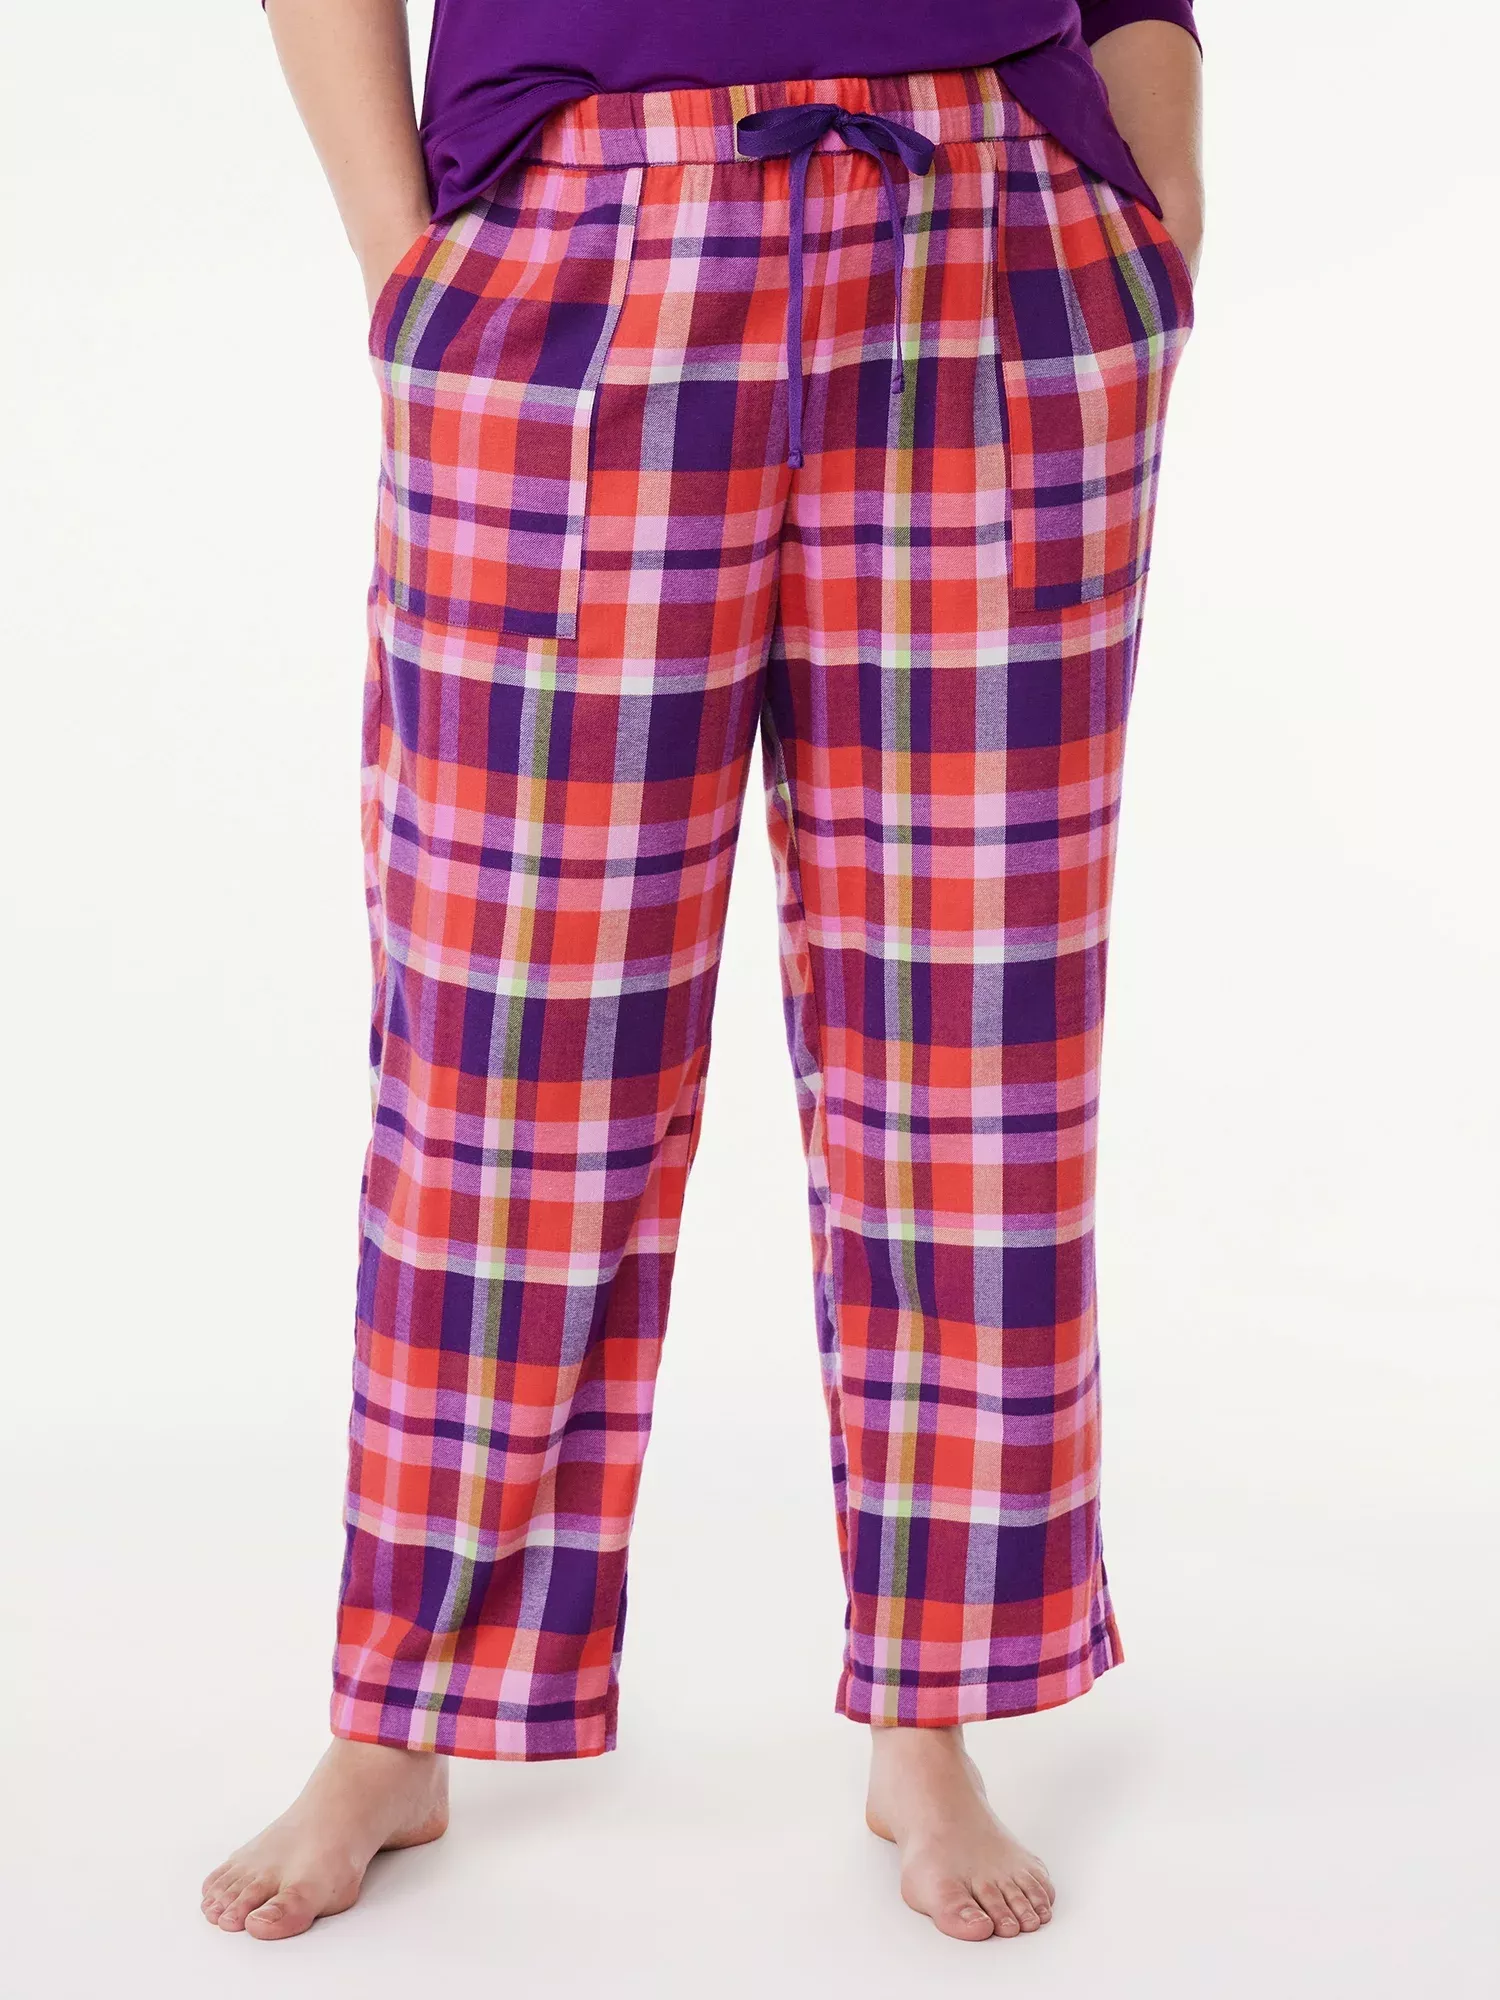 Joyspun Women's Flannel Sleep Shorts, Sizes XS to 3X 